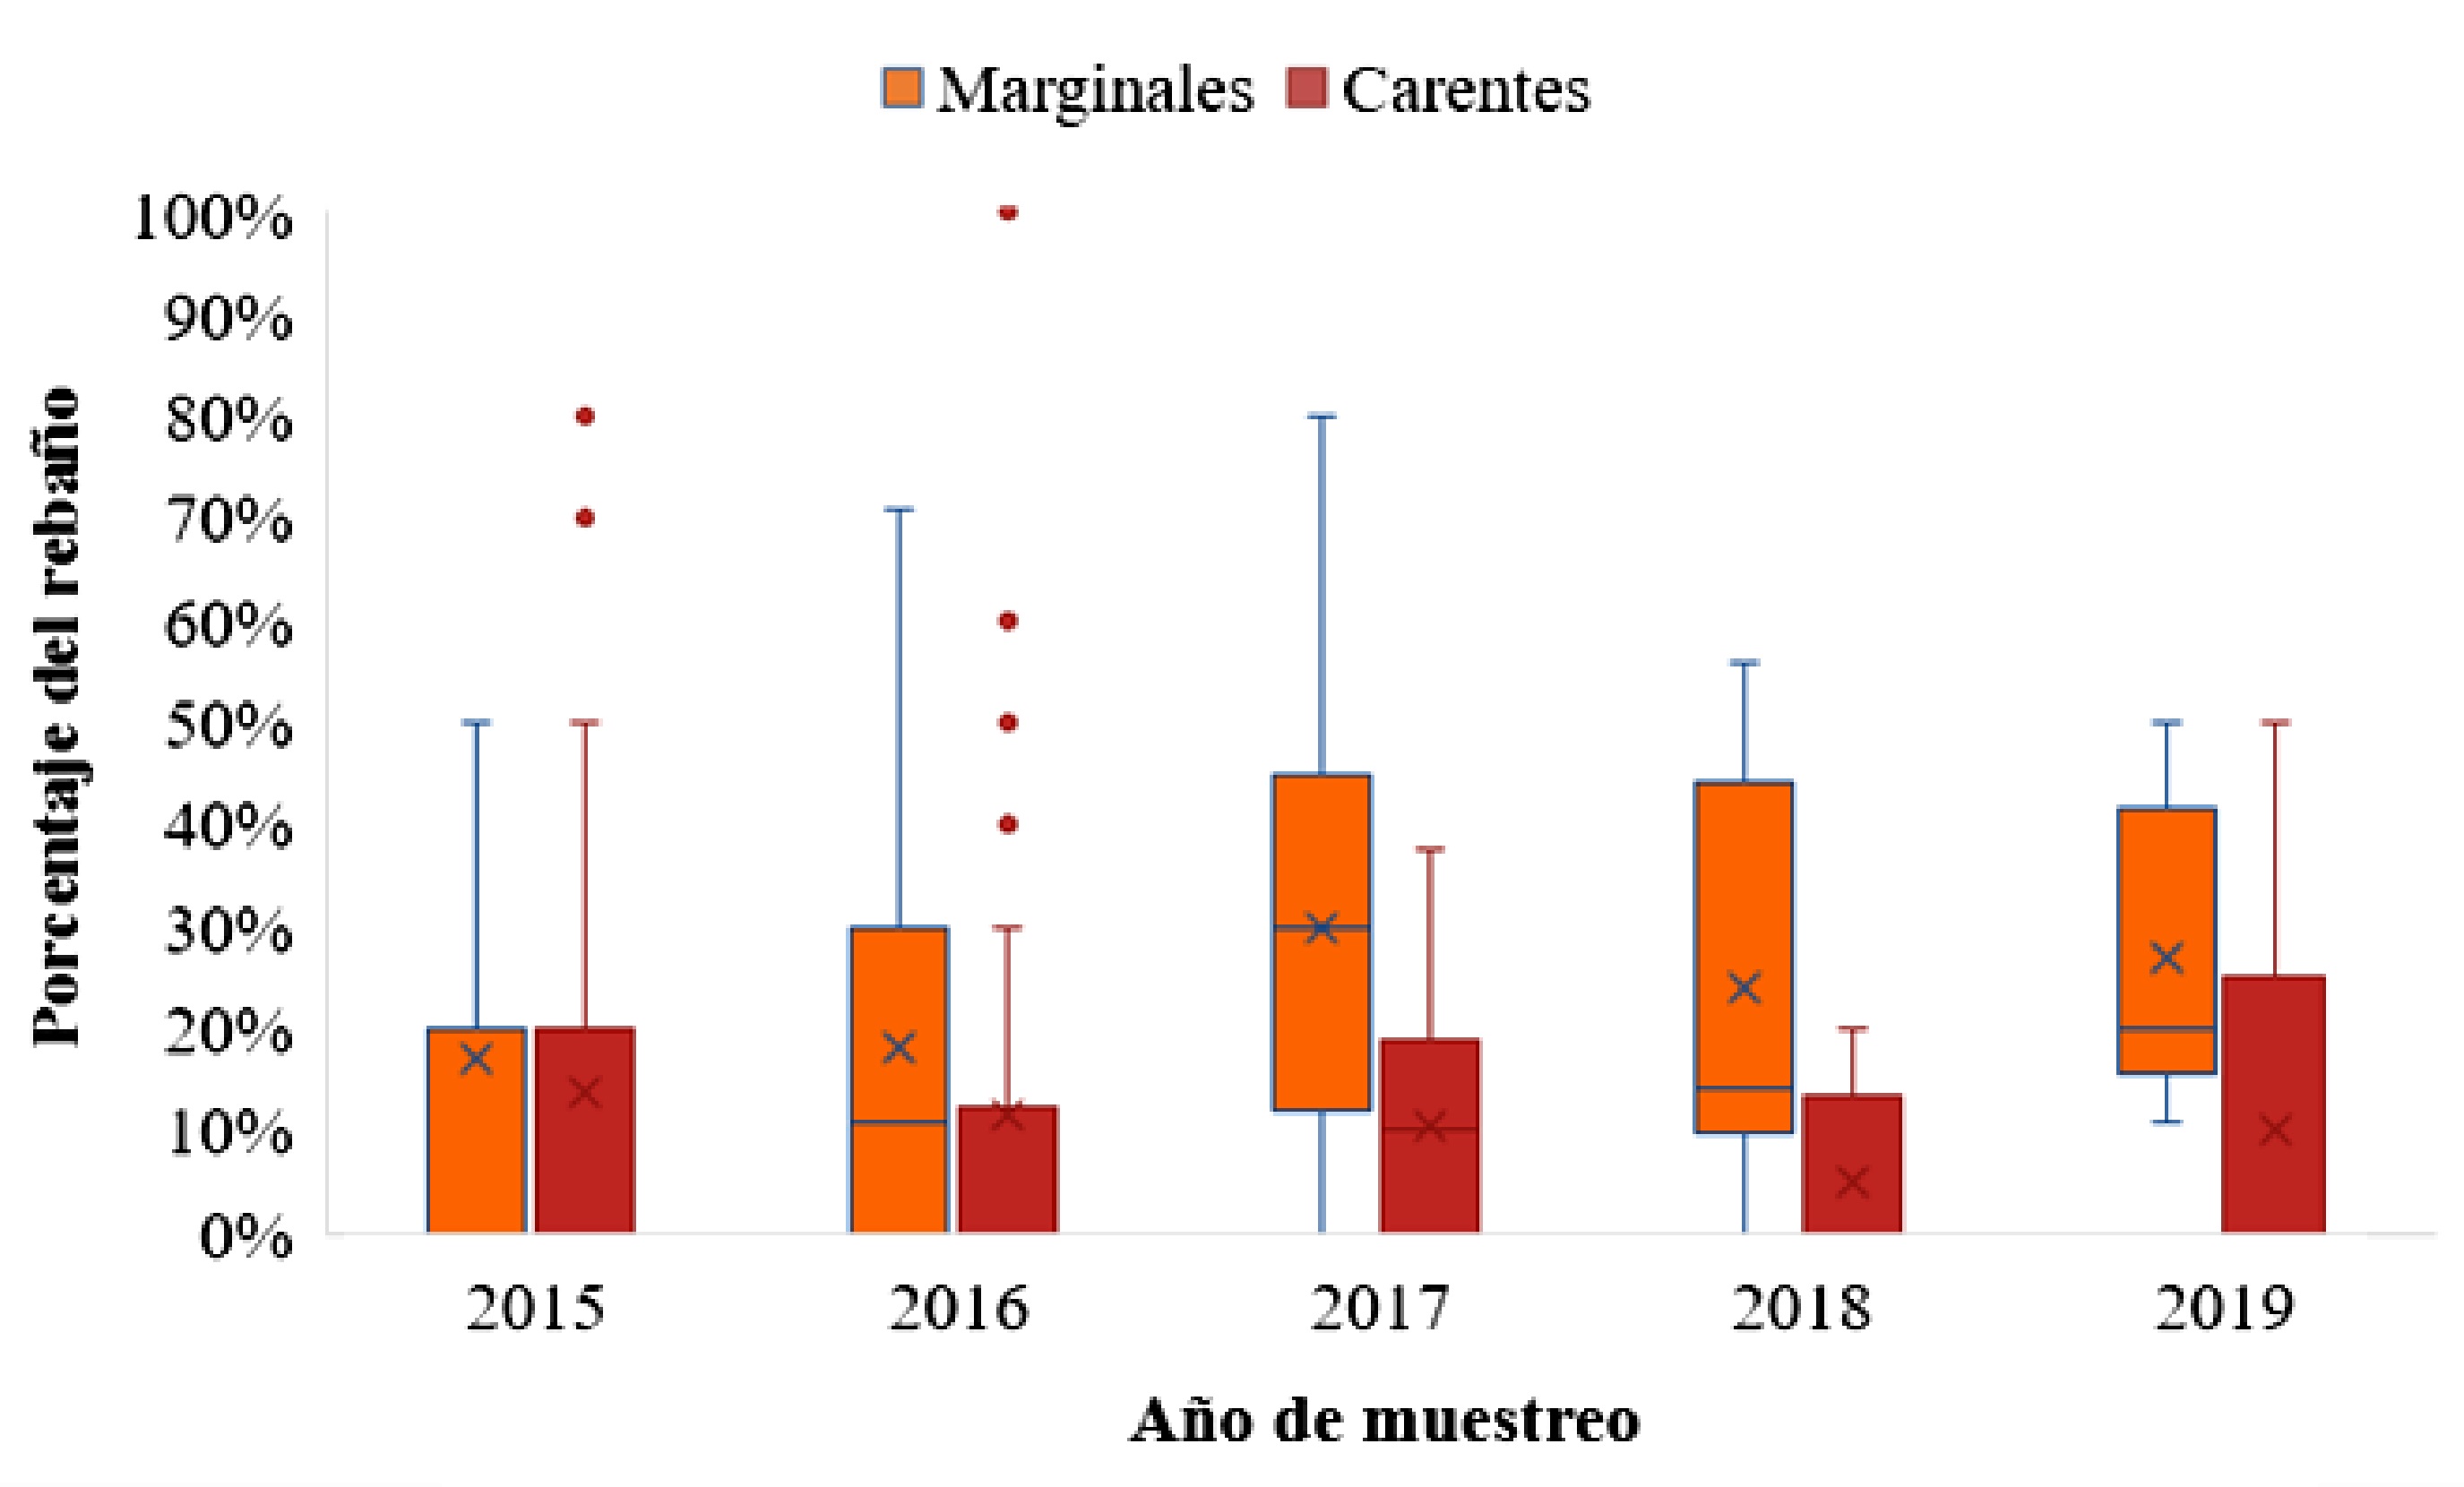 Porcentaje de vacas del
  rebaño con valores plasmáticos de Zn marginales (80 a 89 µg/dl) o carentes
  (<80 µg/dl) por año de muestreo, en la cuenca deprimida del río Salado
  (Buenos Aires, Argentina).